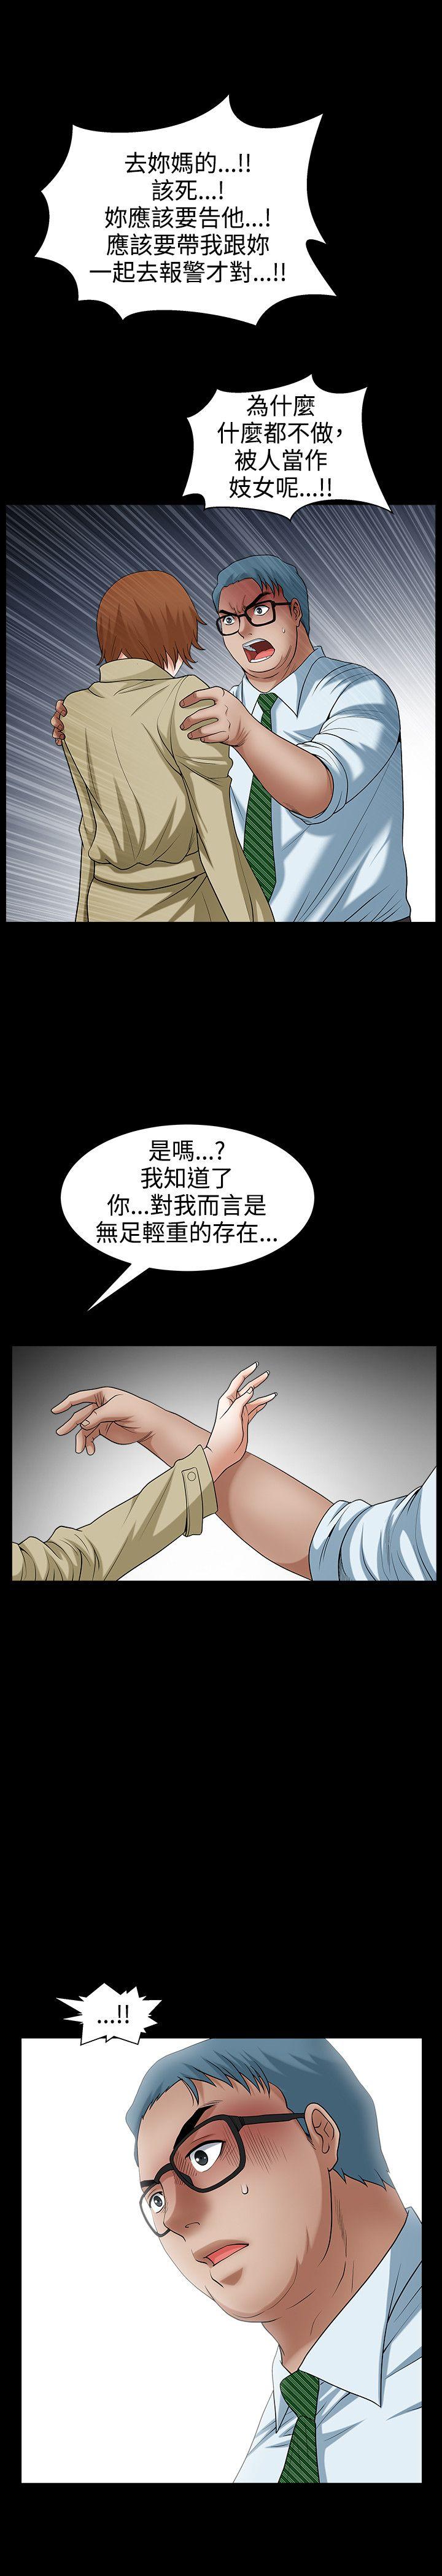 韩国污漫画 人妻性解放3:粗糙的手 最终话 20